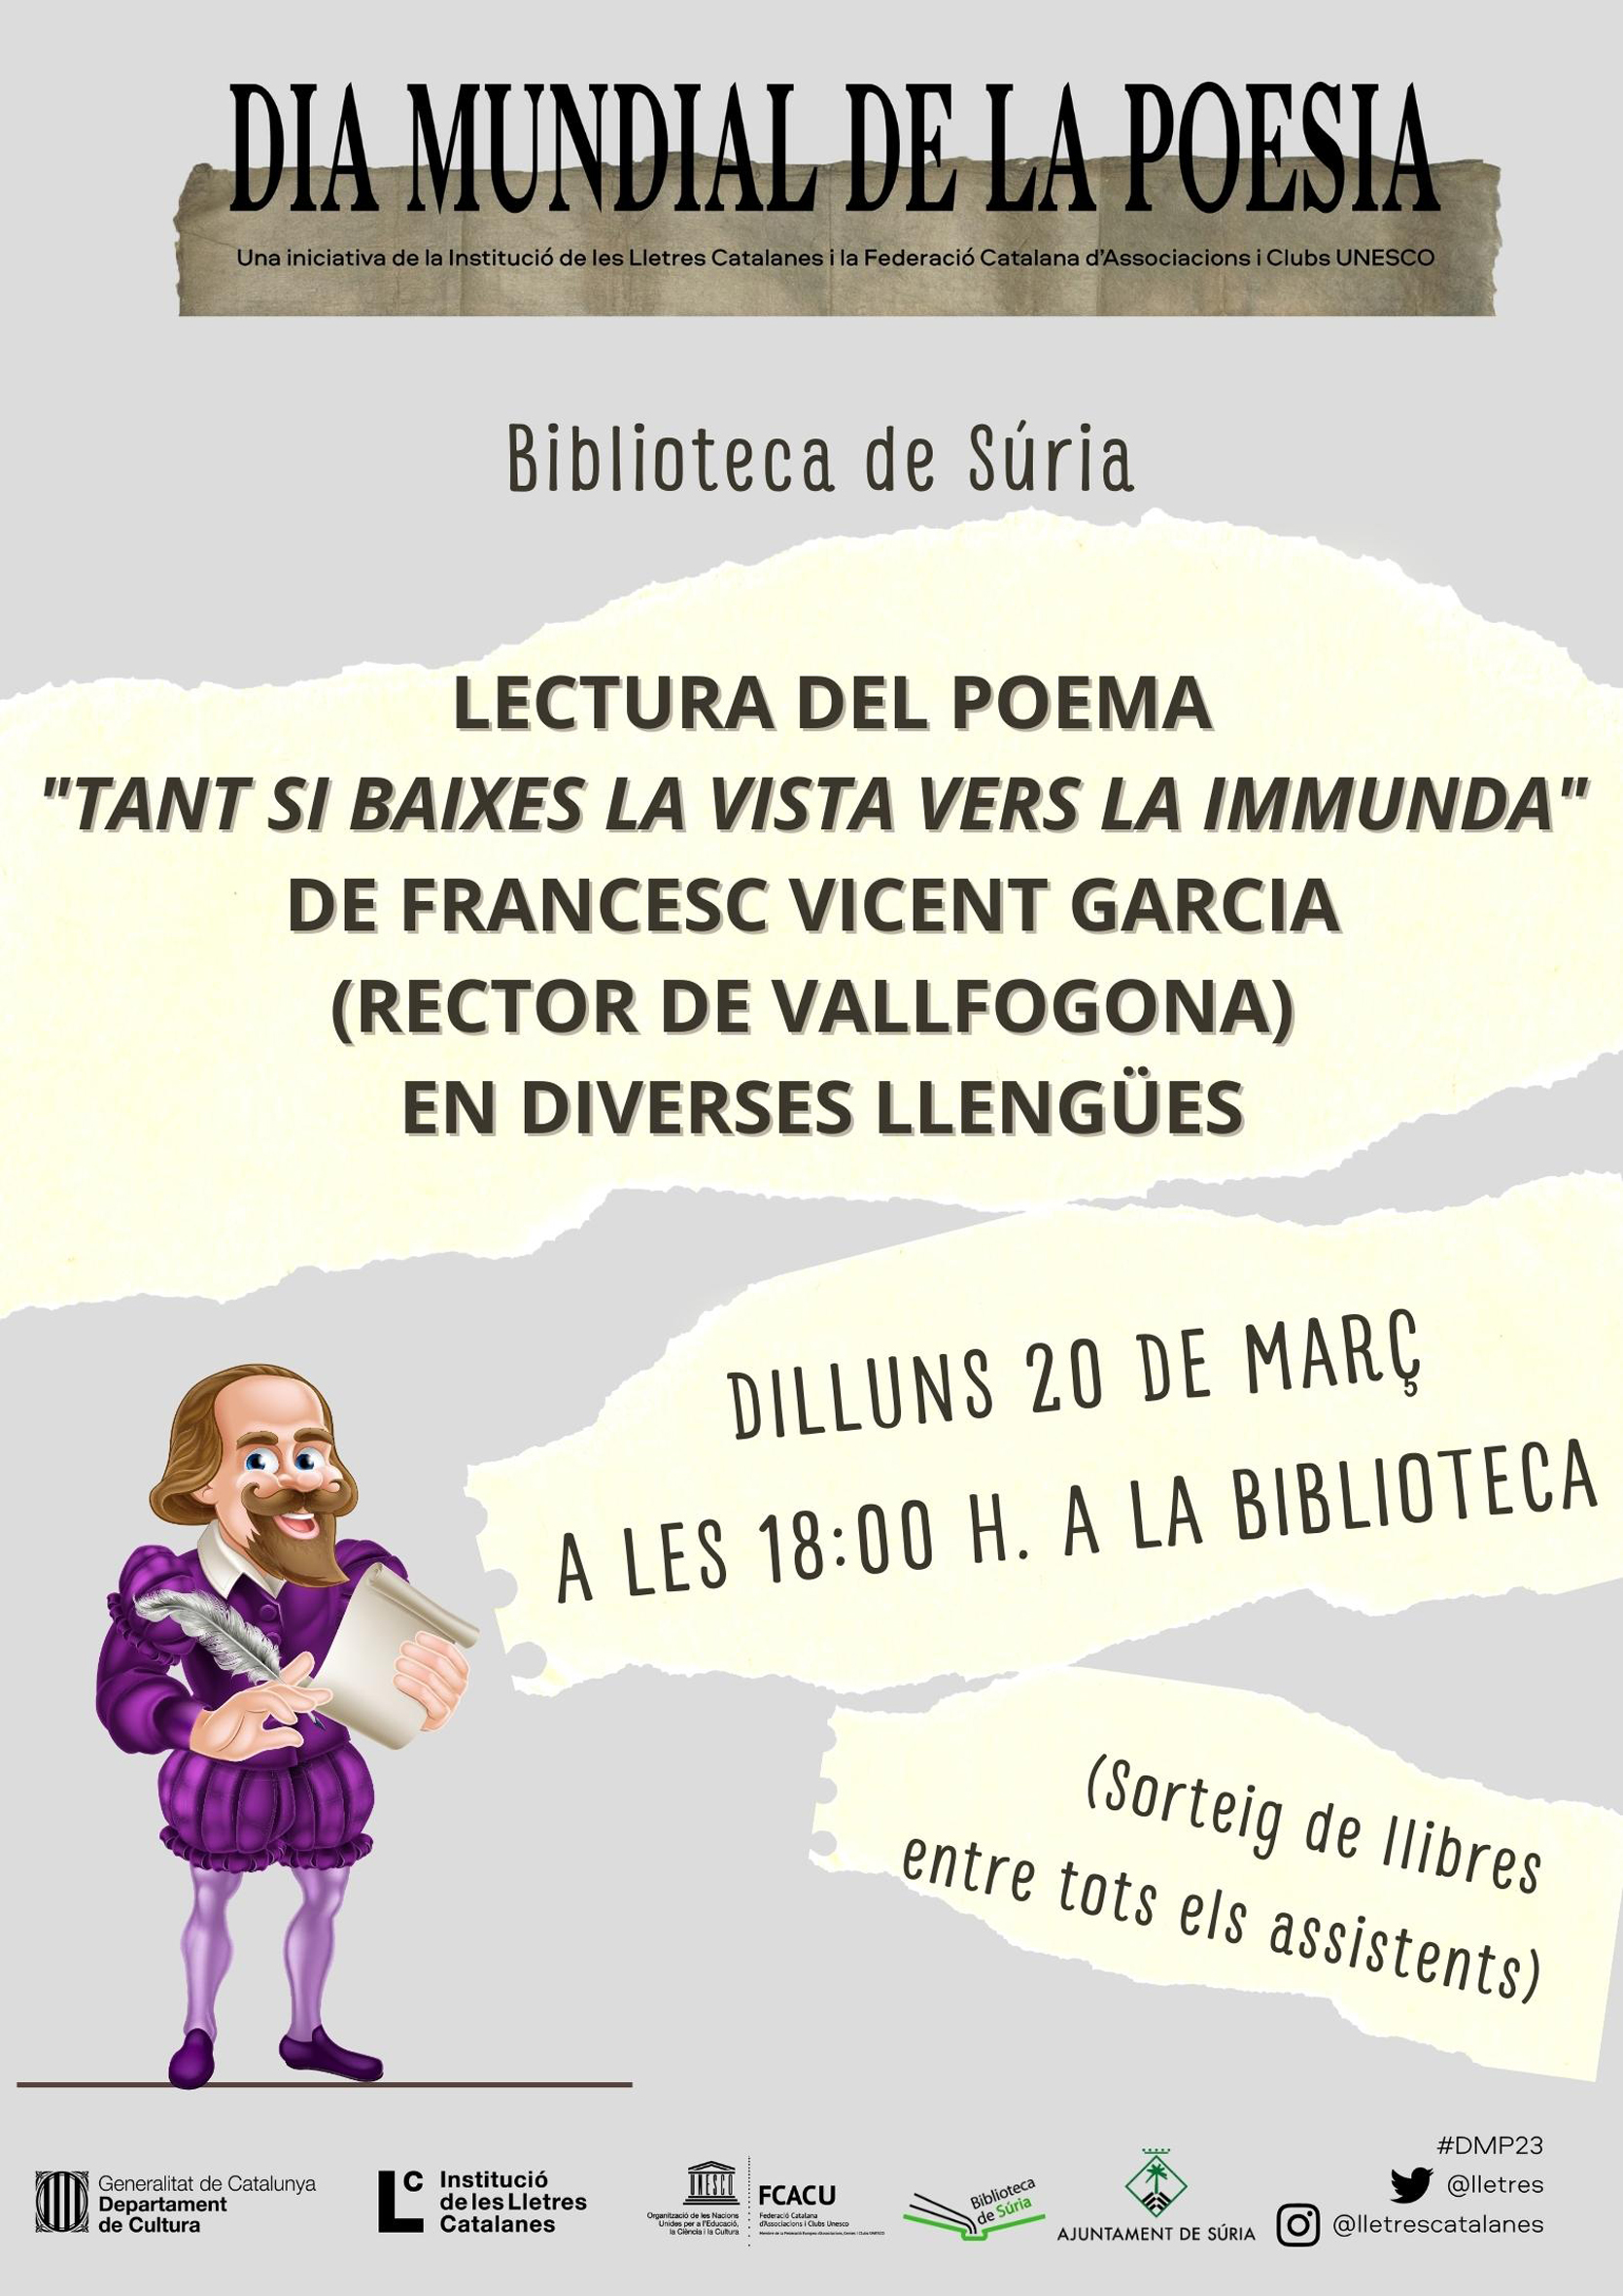 Cartell de l'acte de lectura de poema en diverses llengües, dins del programa del Dia Mundial de la Poesia - Dilluns 20 de març.